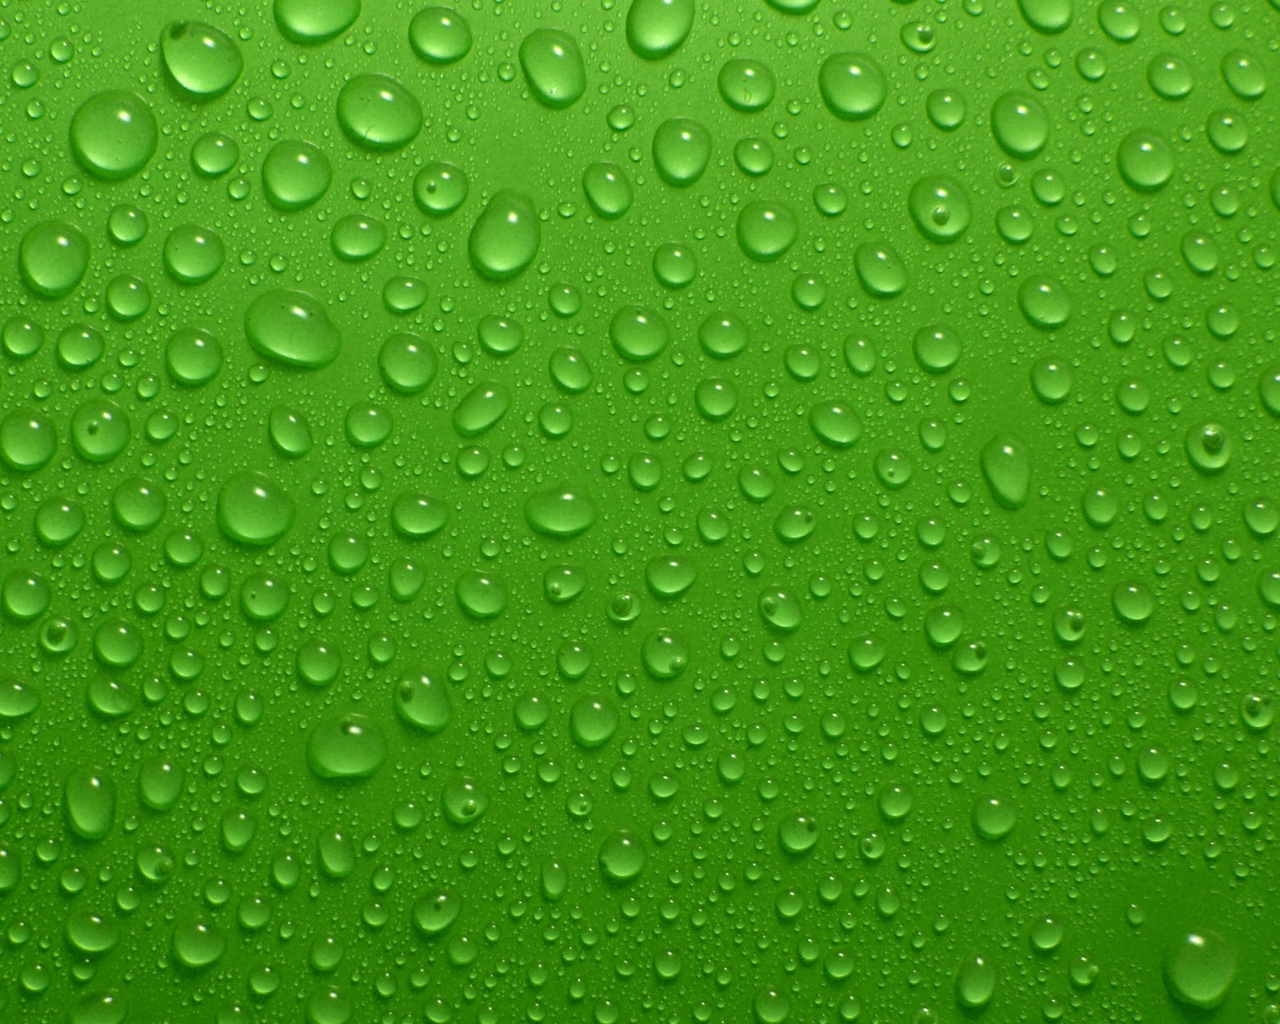 Картинка: Капли, вода, фон, зелёный